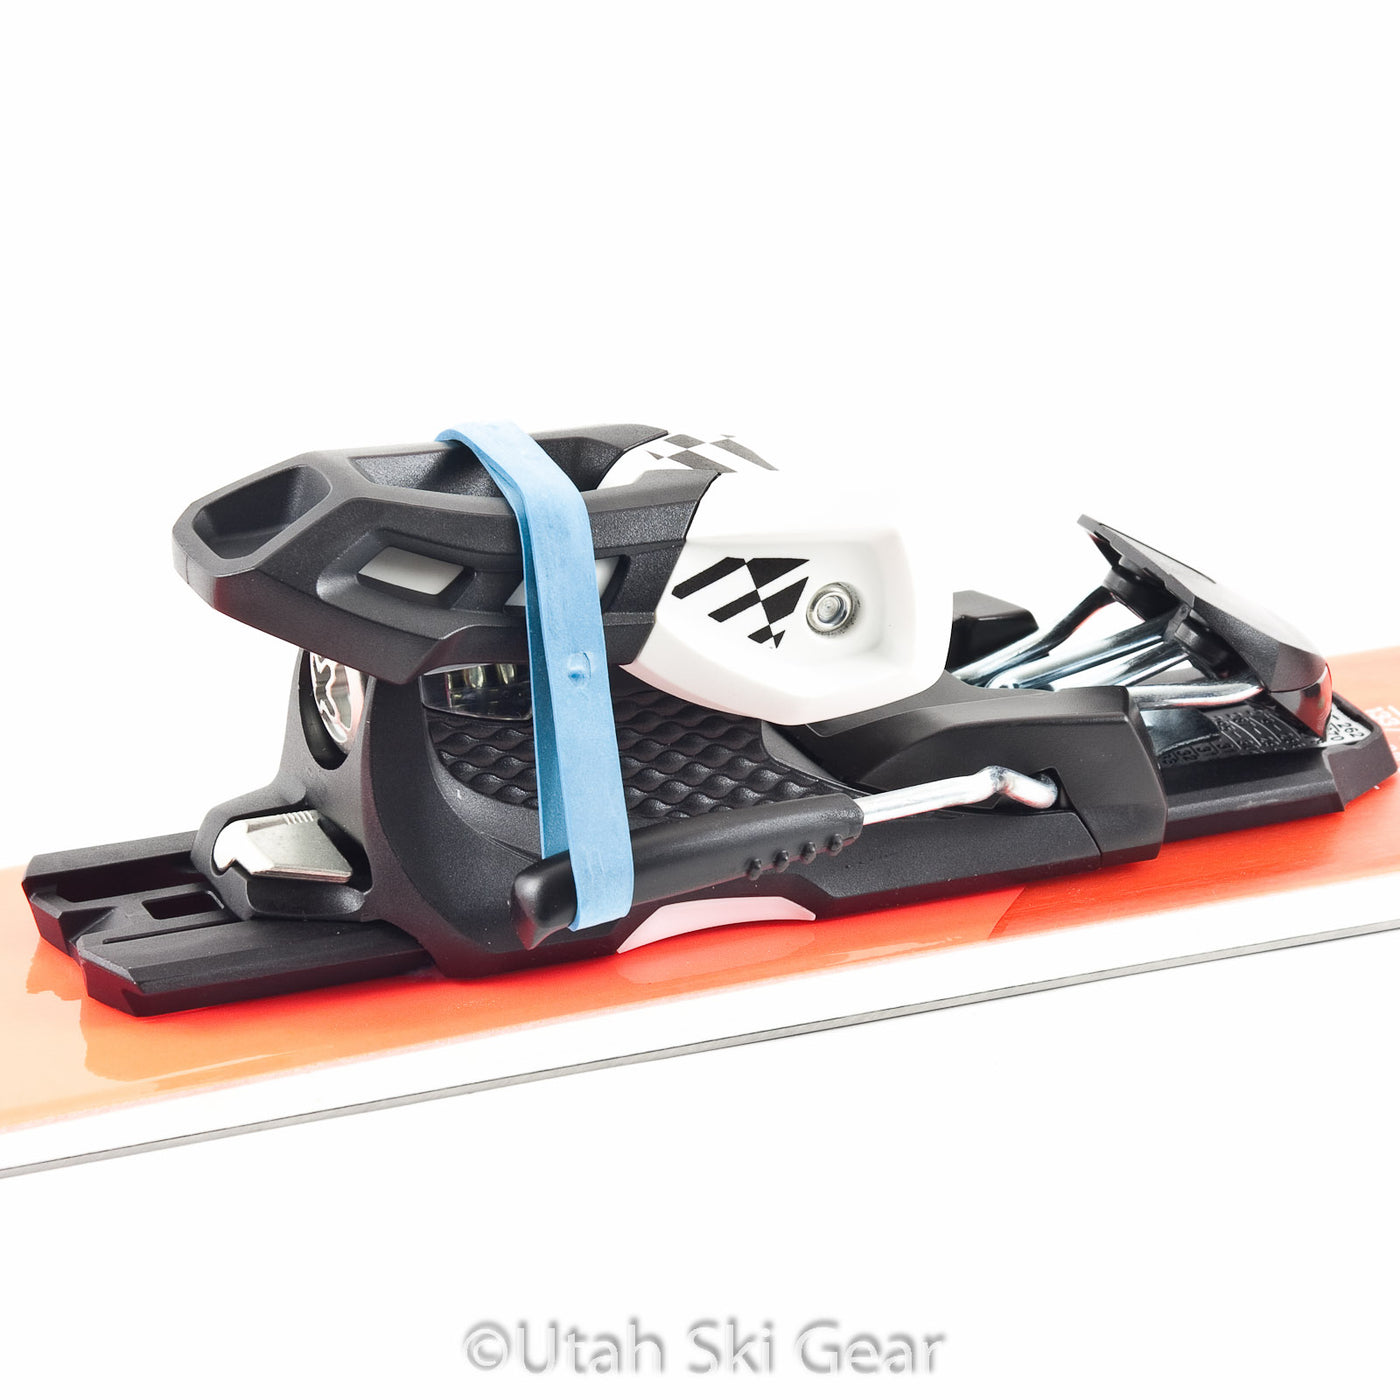 Utah Ski Gear Rubber Brake Retainers (10 Pack)